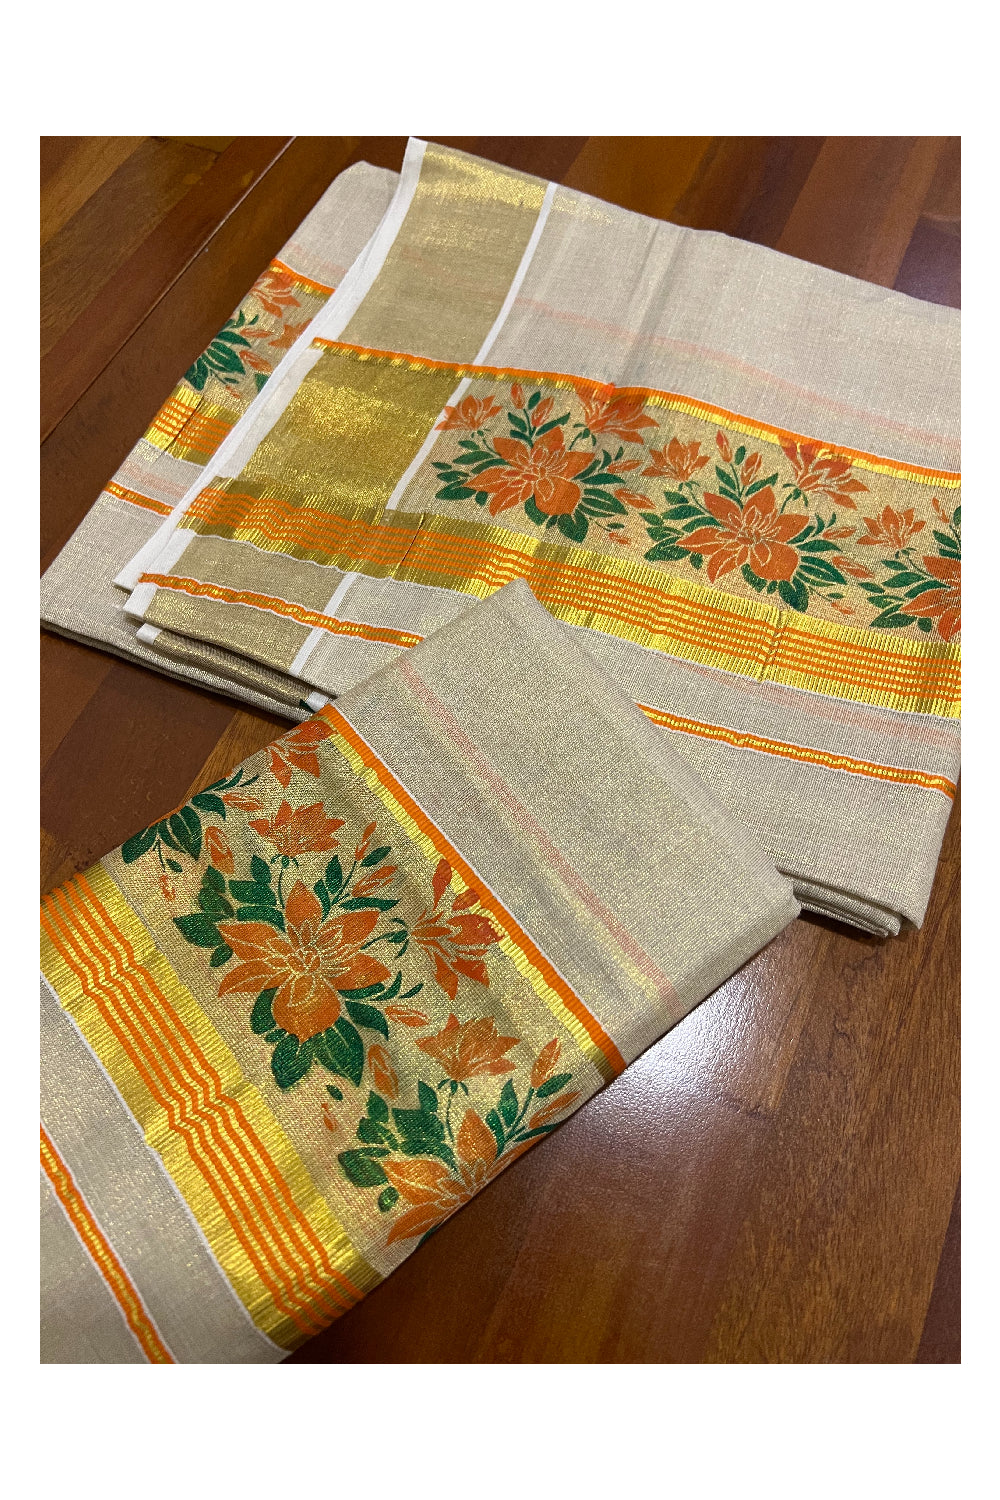 Kerala Tissue Kasavu Set Mundu (Mundum Neriyathum) with Orange Green Floral Block Prints on Border 2.80 Mtrs